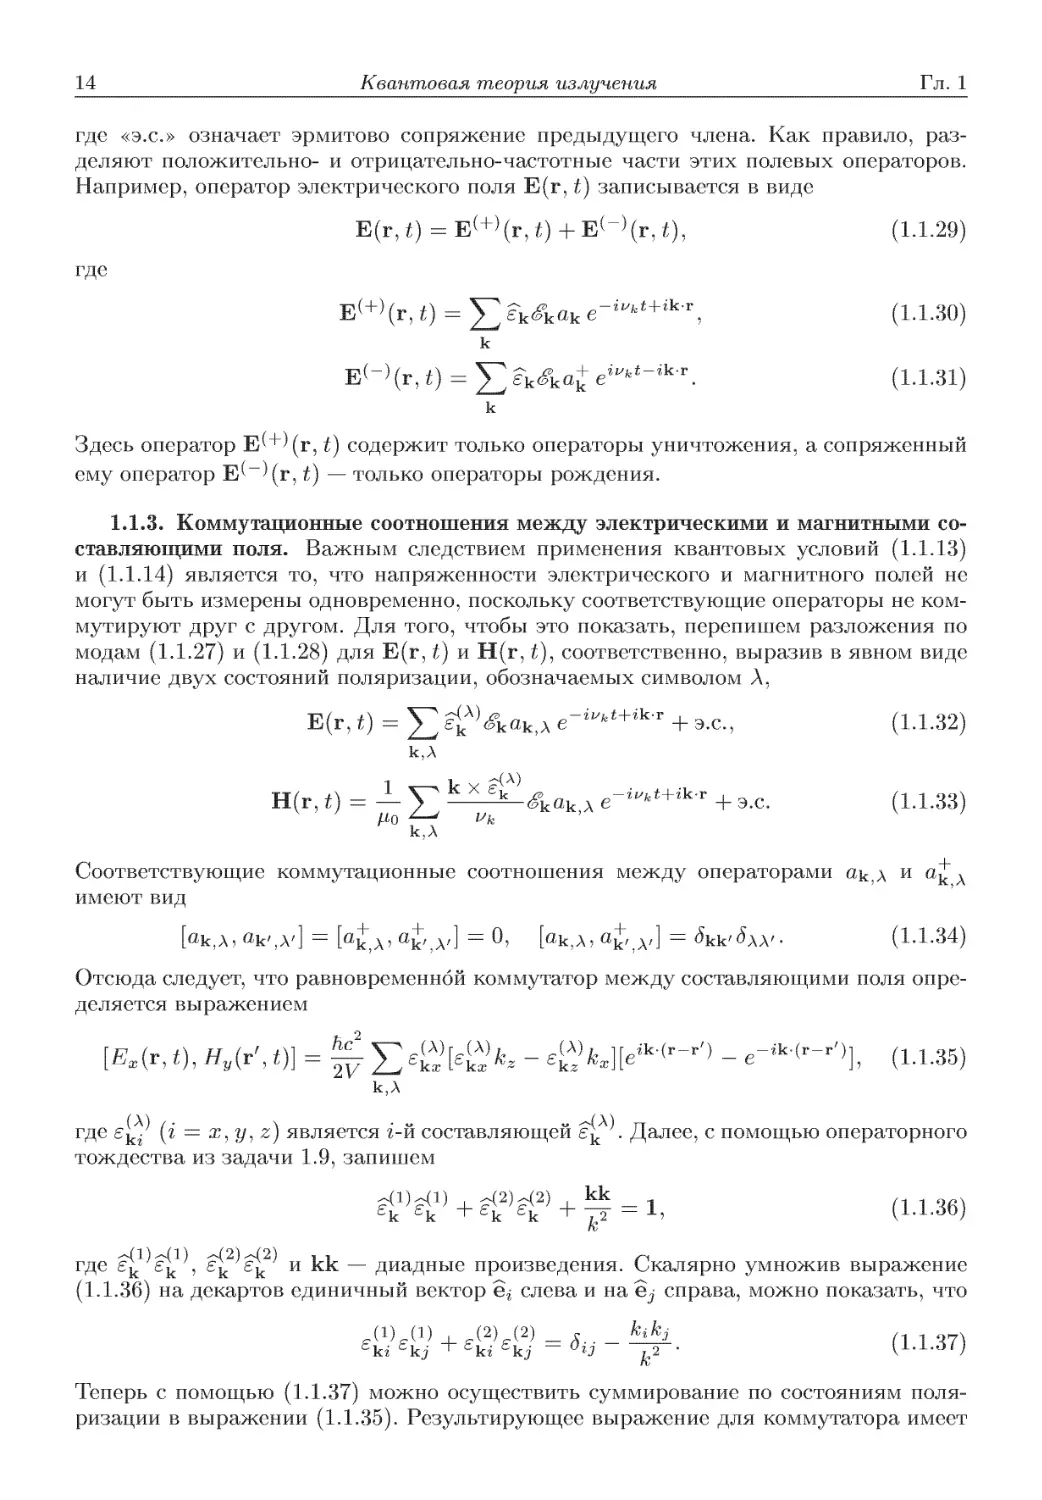 1.2. Фоковские состояния или представление чисел заполнения